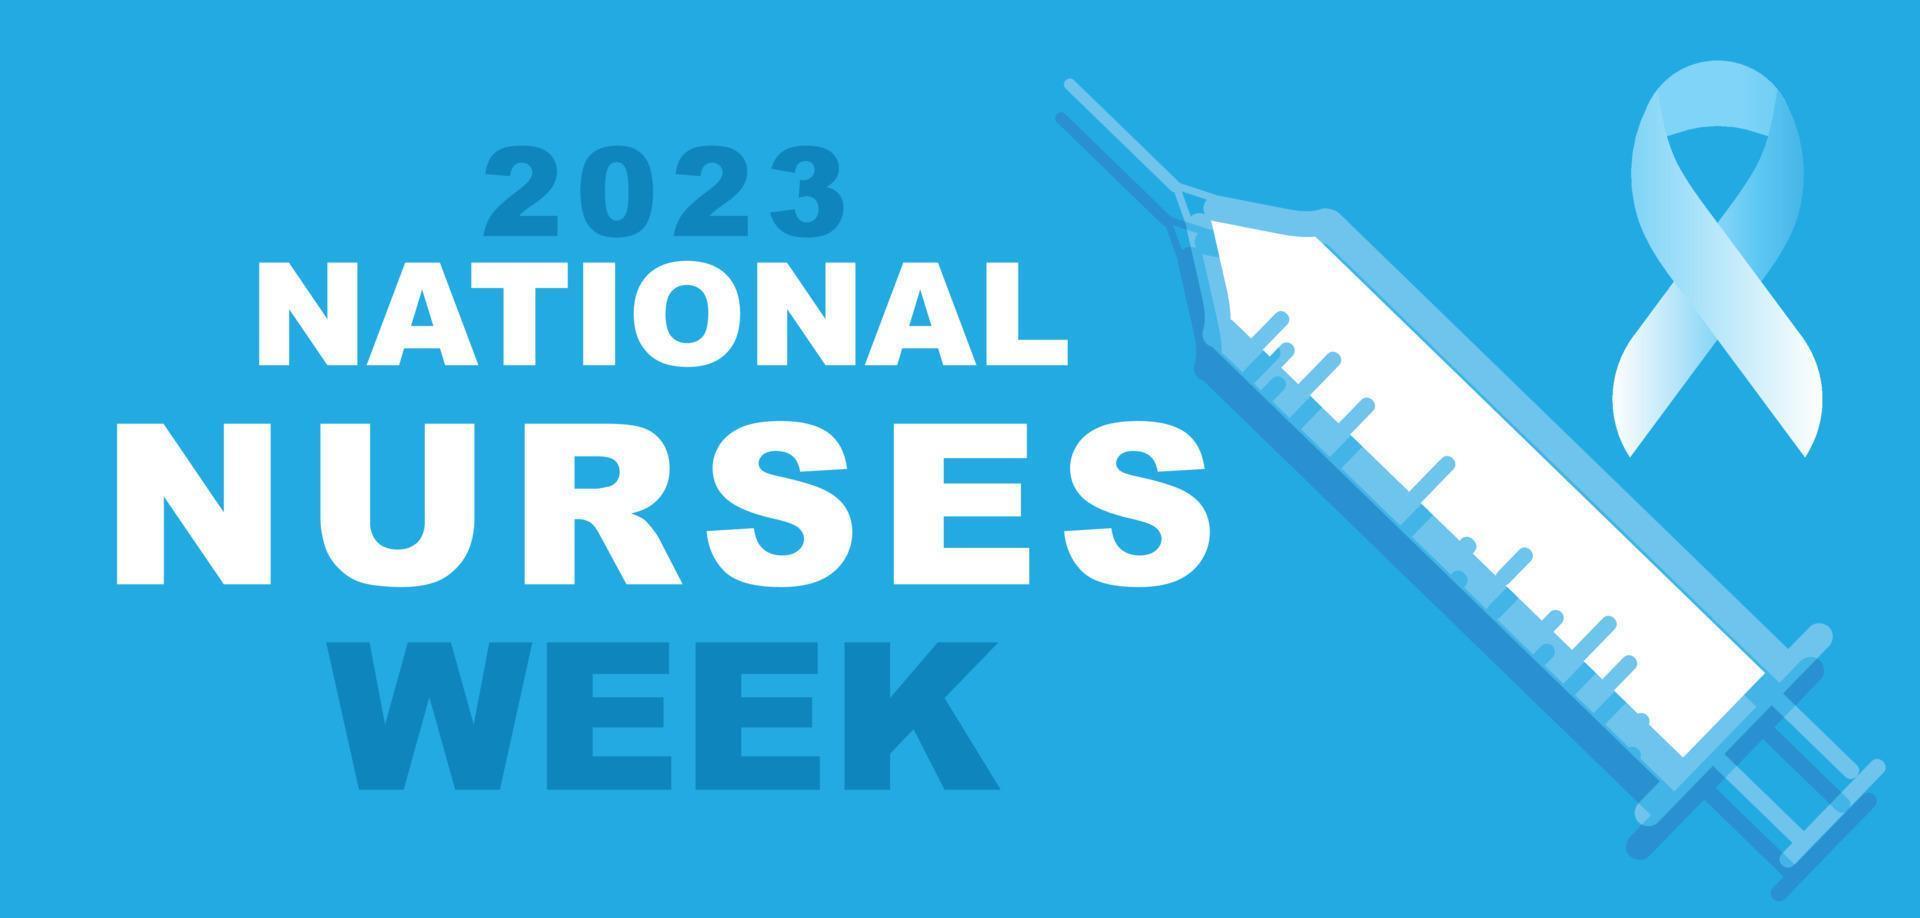 mayo 06 a 12 es nacional enfermeras semana. modelo para fondo, bandera, tarjeta, póster. vector